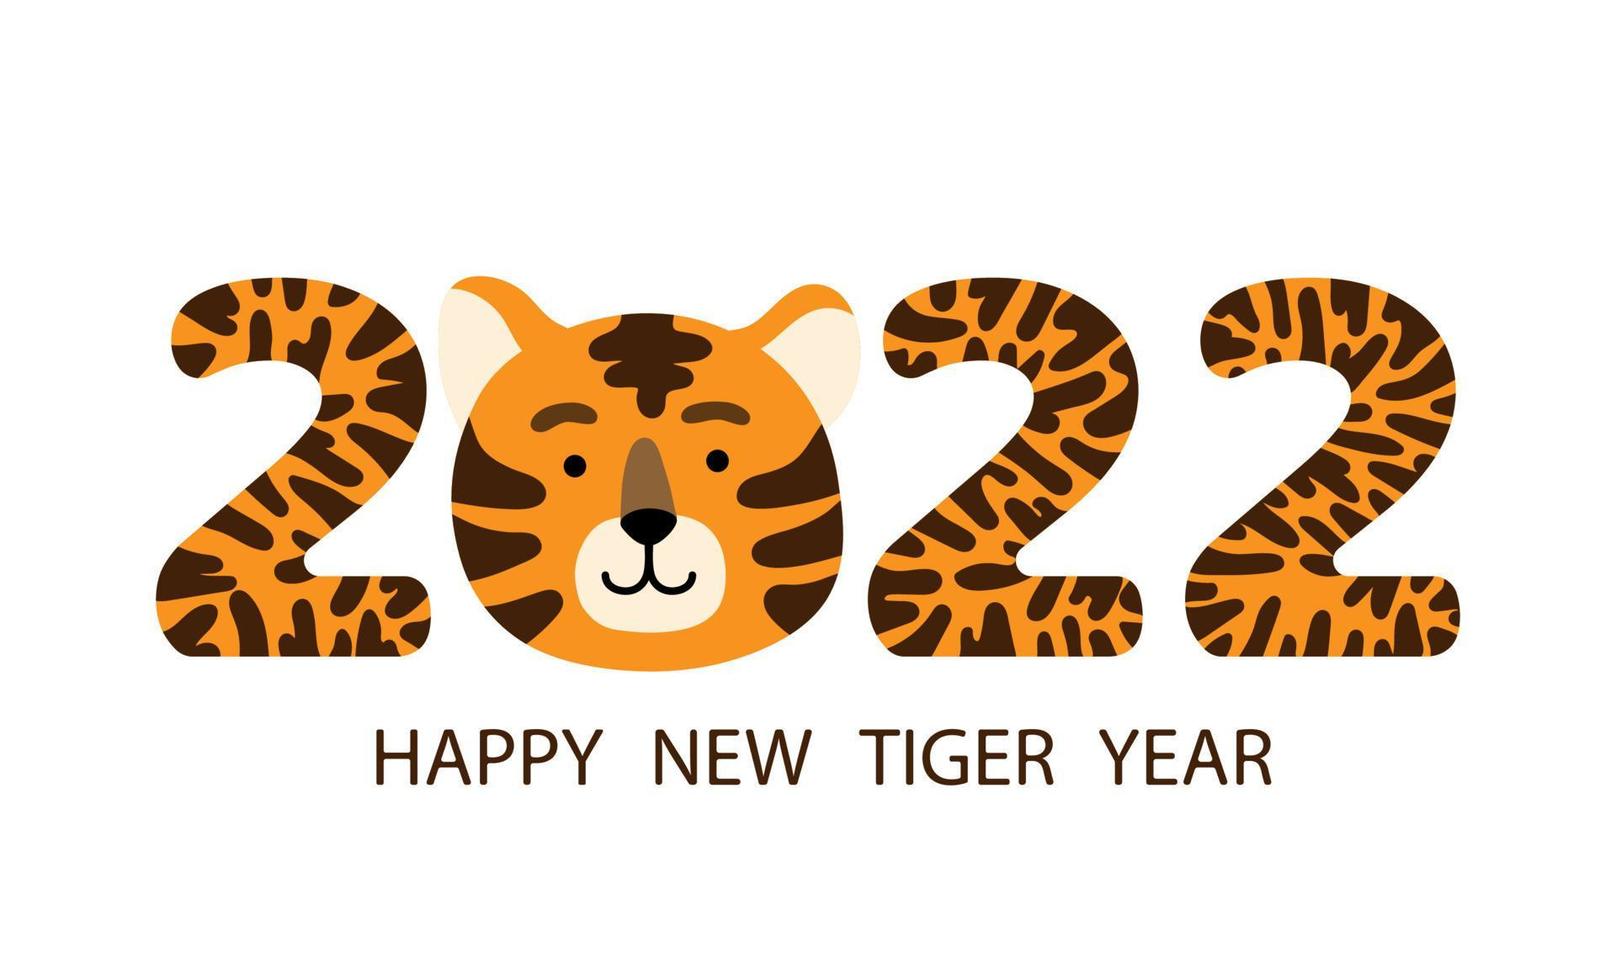 joyeux nouvel an chinois 2022 carte de voeux ou bannière avec visage de tigre drôle de dessin animé et chiffres de l'année rayés. illustration vectorielle dessinés à la main plat vecteur